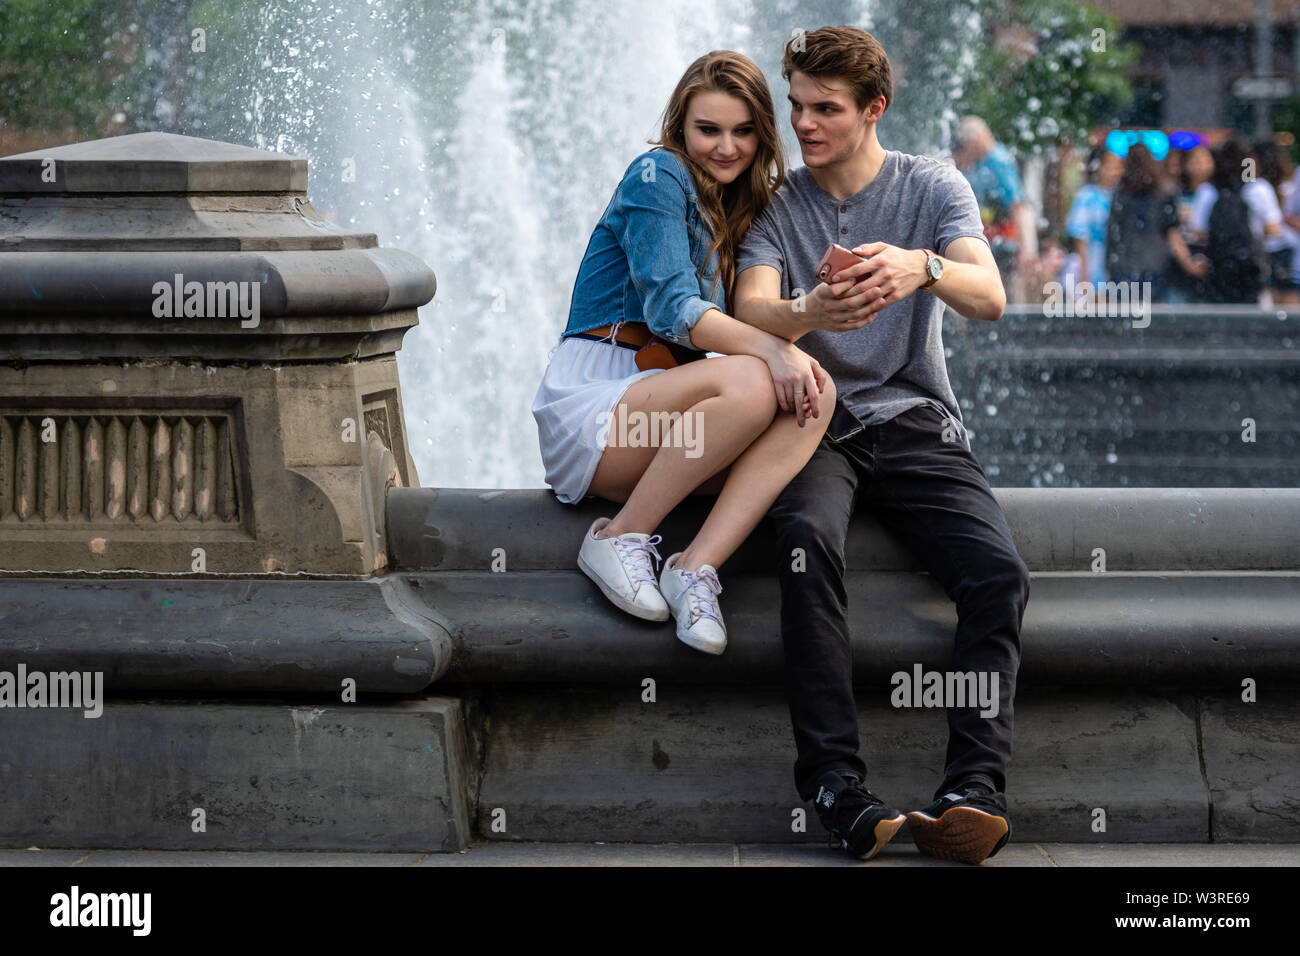 New York, Stati Uniti d'America - 21 Giugno 2019: una giovane coppia è seduto in un parco nei pressi di una fontana e parlando e guardando sul telefono. Foto Stock